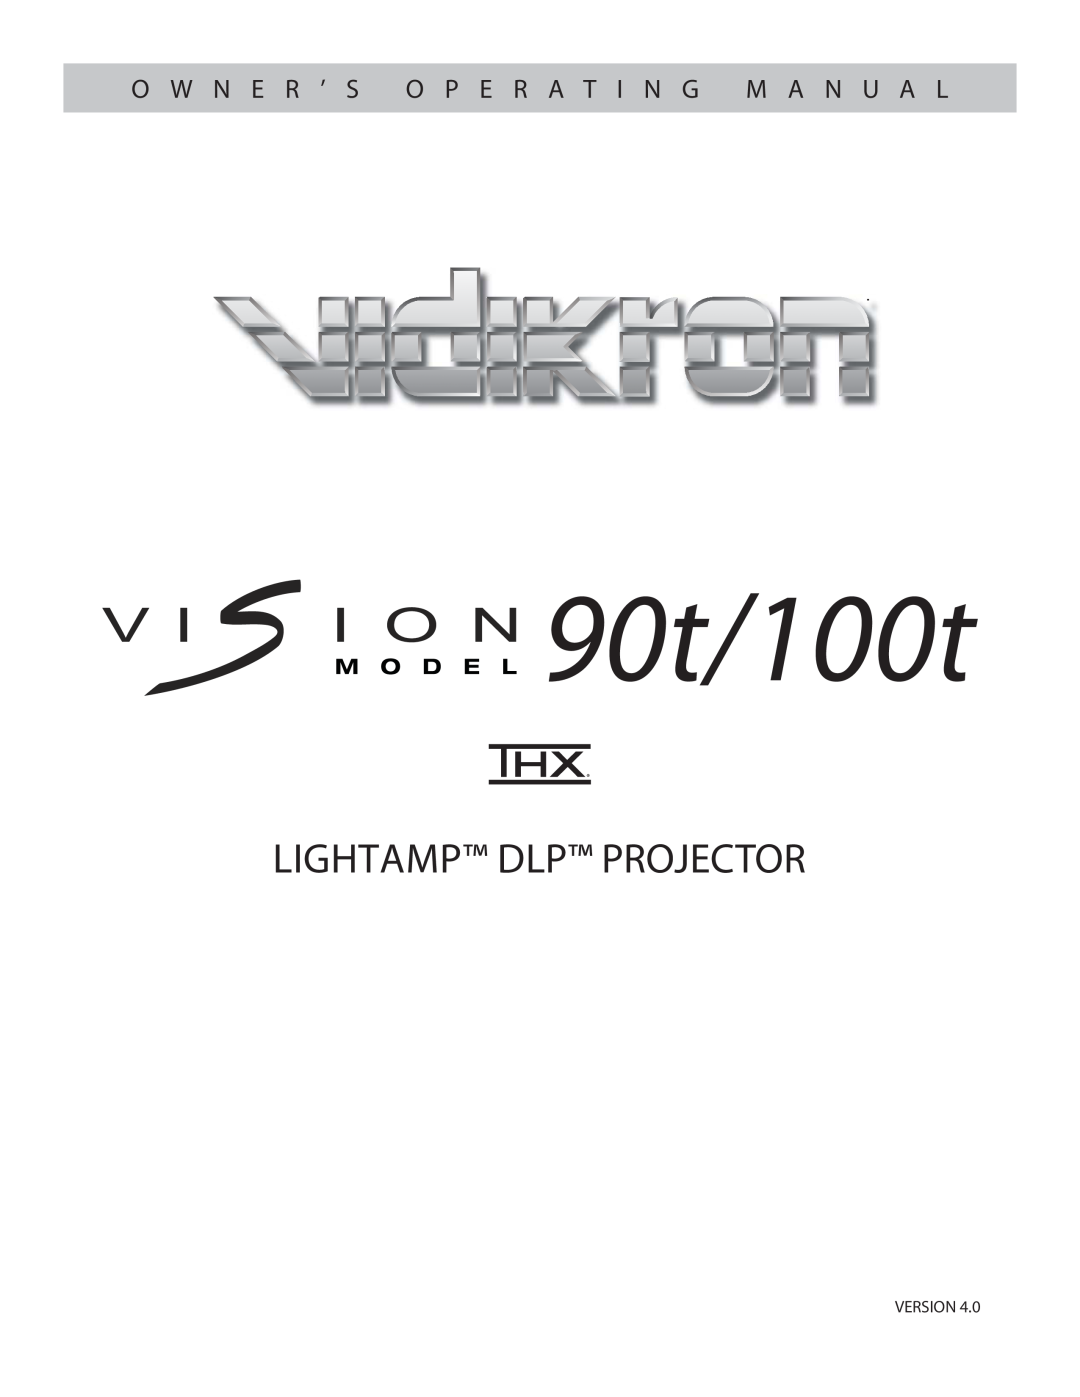 Vidikron Vision 100t manual Version, 90t/100t, Lightamp Dlp Projector, O W N E R ’ S O P E R A T I N G M A N U A L 